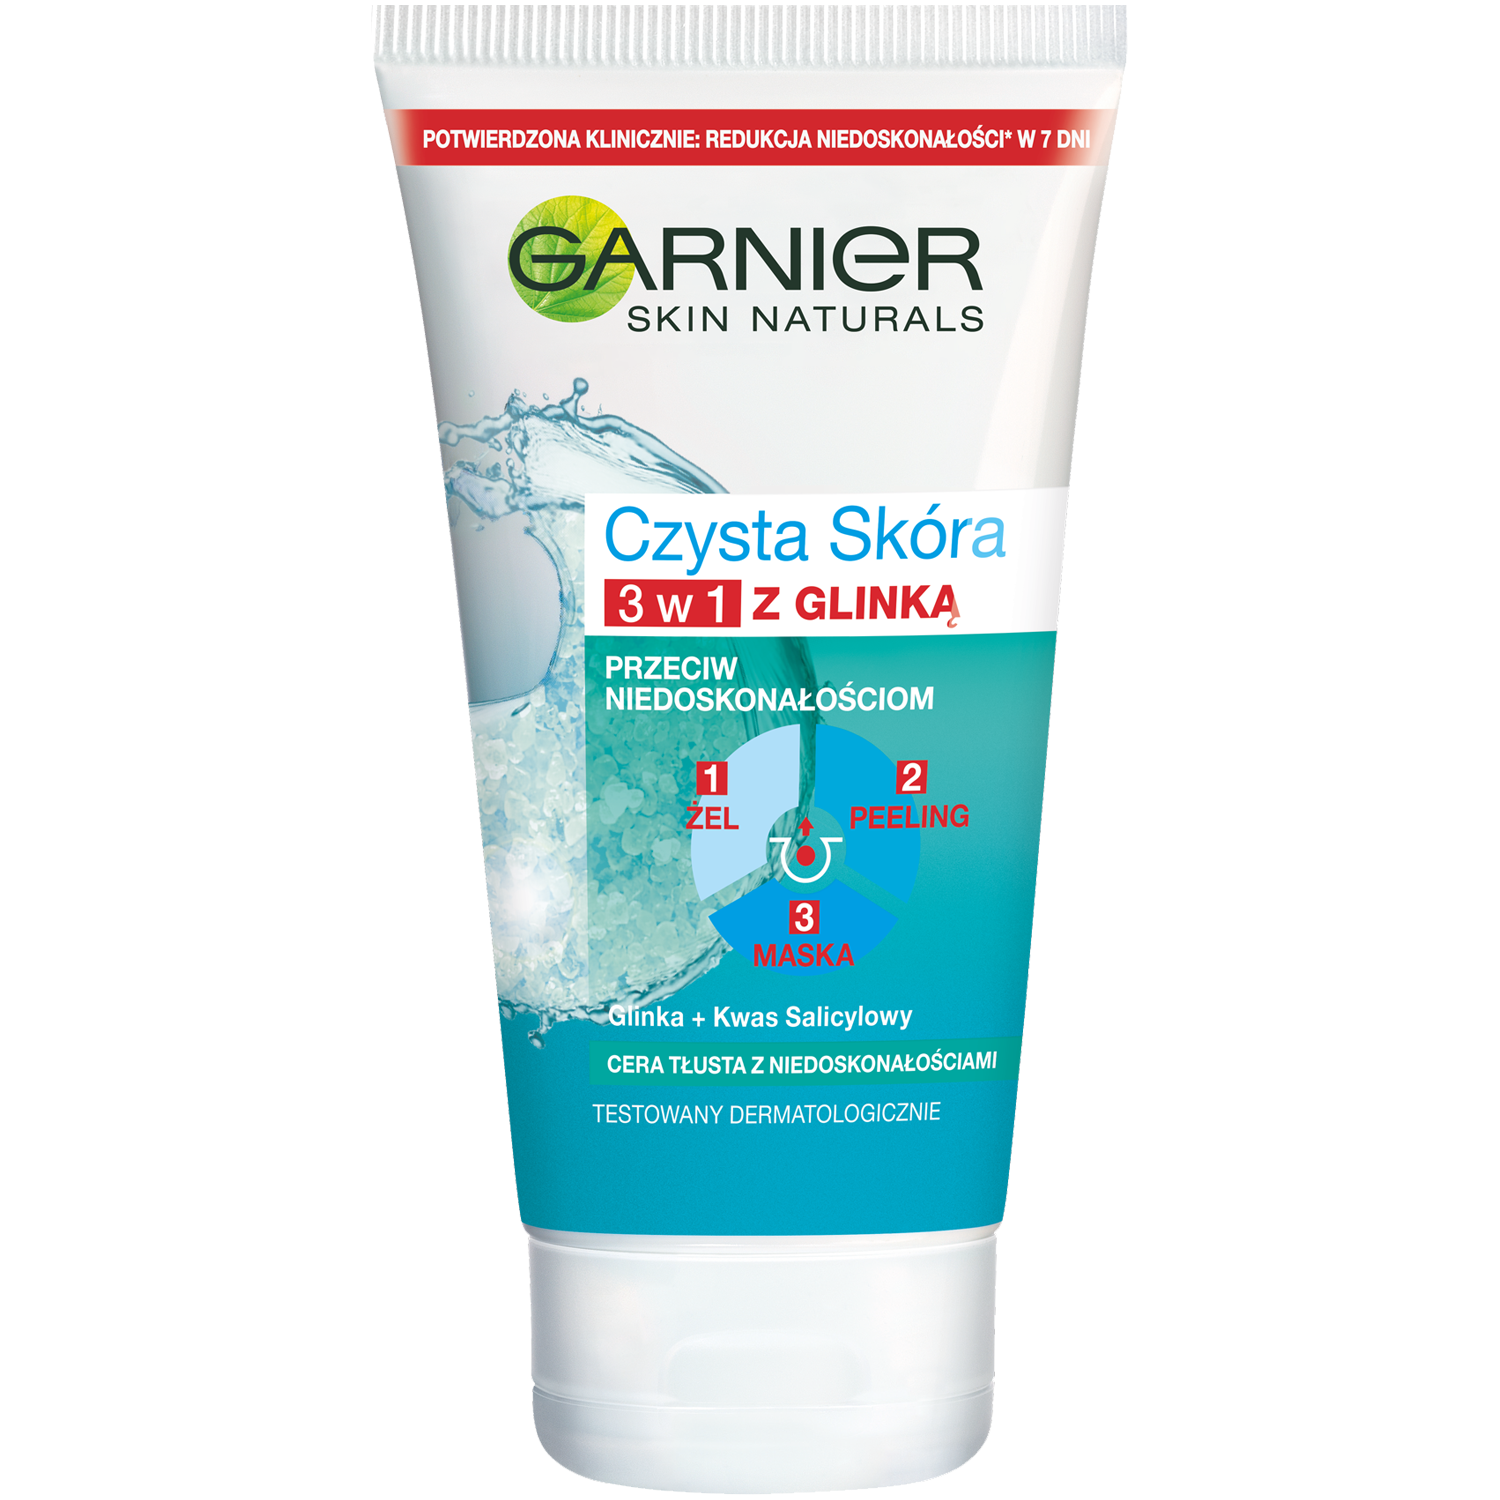 Garnier Czysta Skóra oczyszczający żel myjący 3w1 do twarzy, 150 ml |  hebe.pl